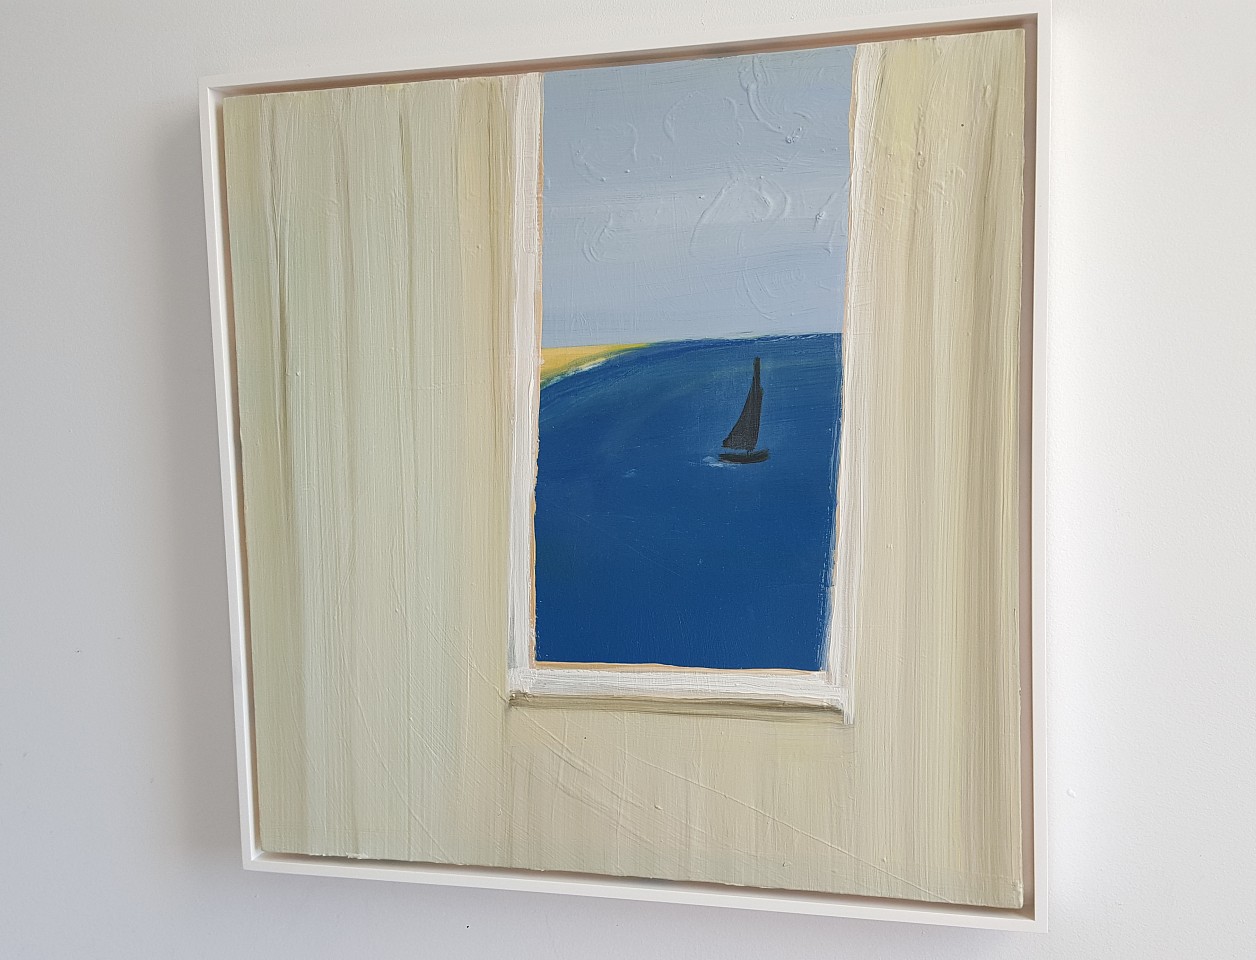 Kathryn Lynch
Window on Sail, 2015
lyn618
oil on panel, 18 x 18 inches